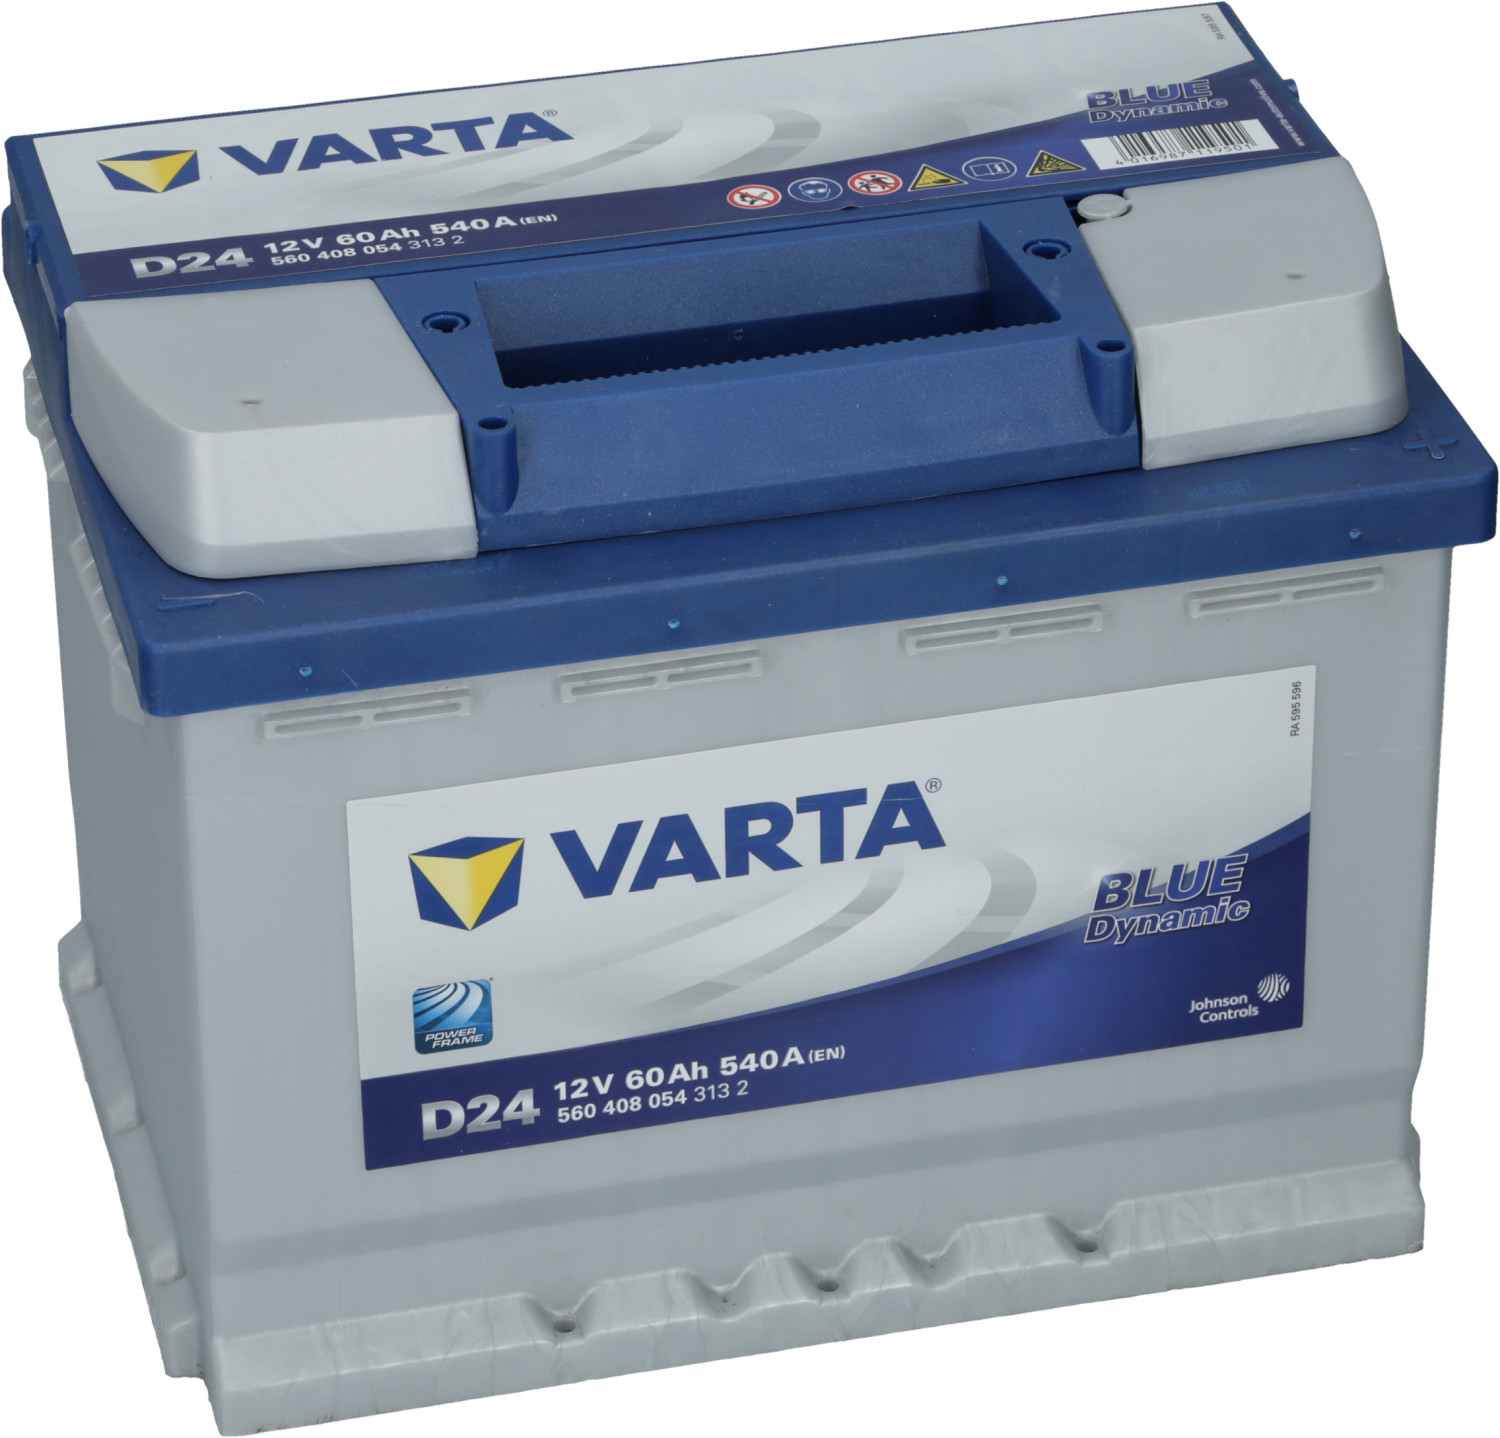 5604080543132 VARTA D24 BLUE dynamic D24 Batterie 12V 60Ah 540A B13  Batterie au plomb